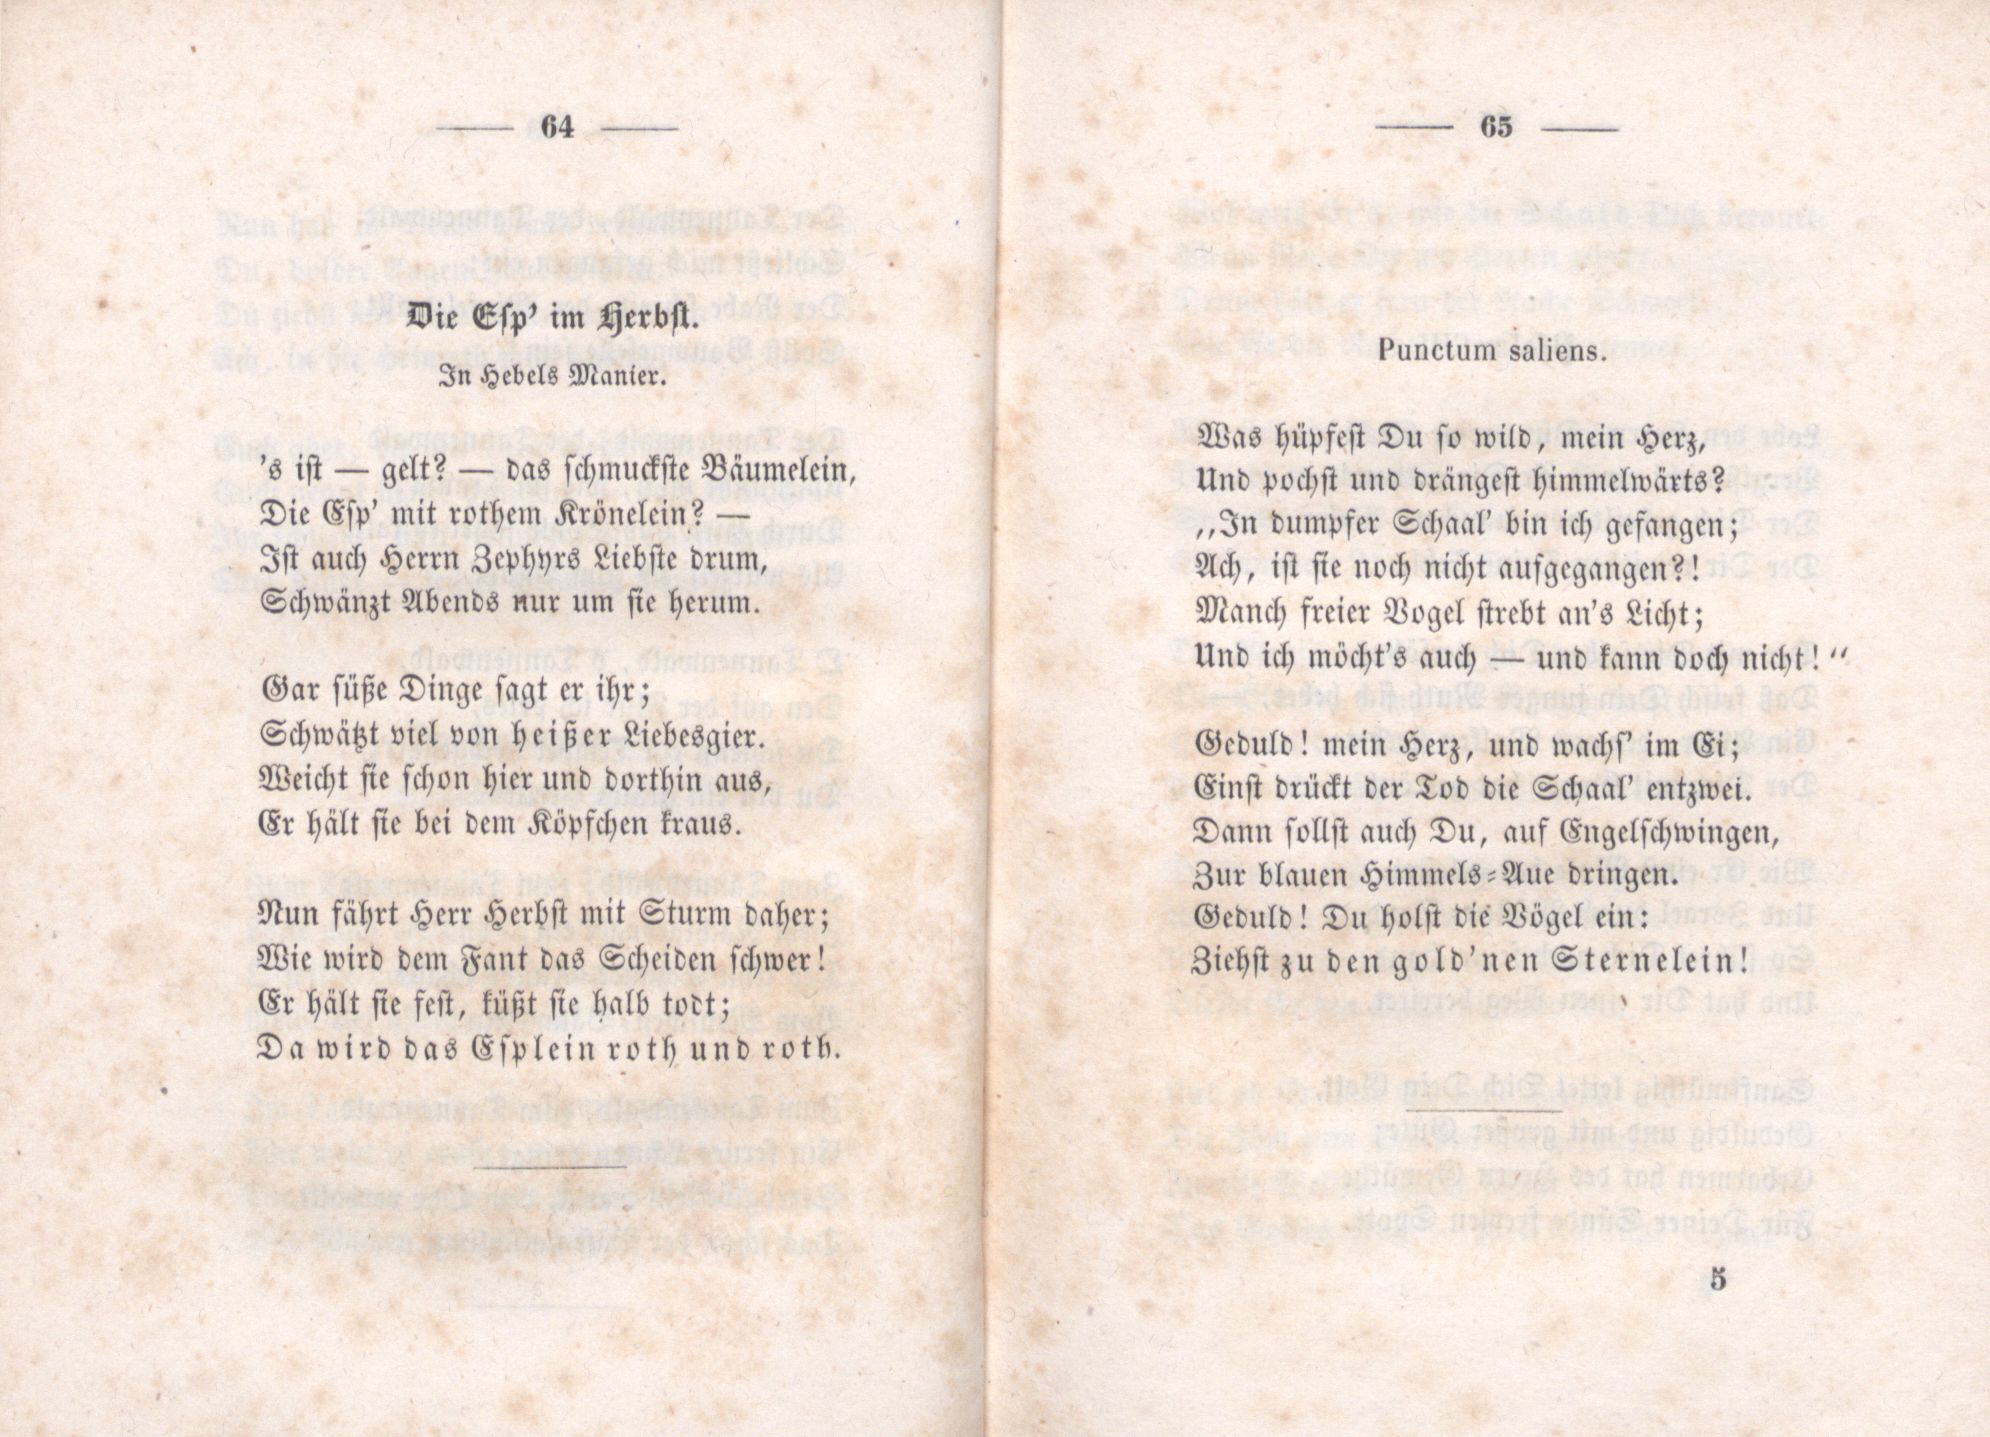 Die Esp' im Herbst (1851) | 1. (64-65) Основной текст